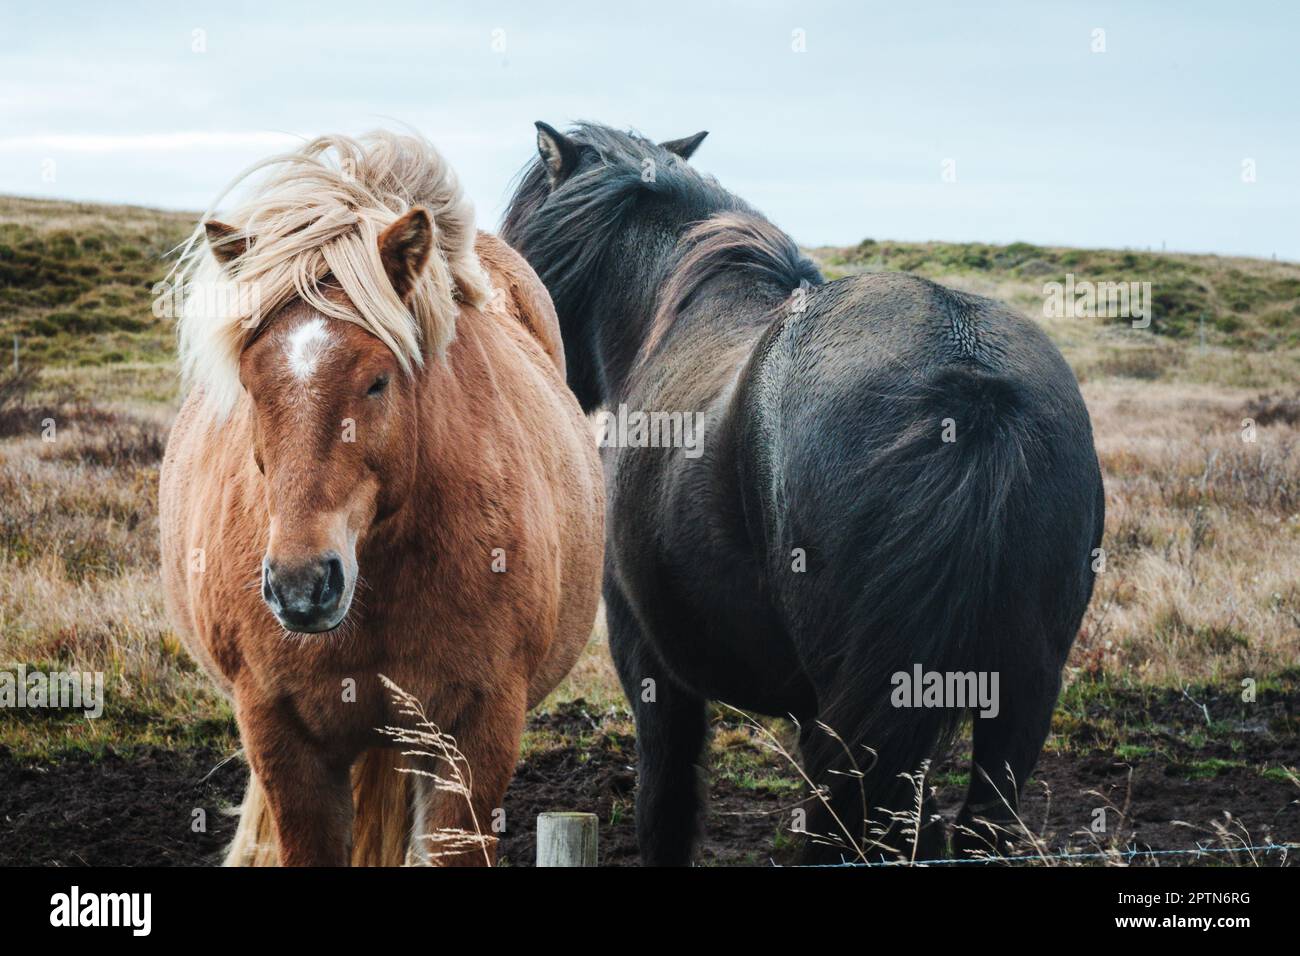 Le cheval islandais est une race de cheval développée en Islande. Banque D'Images